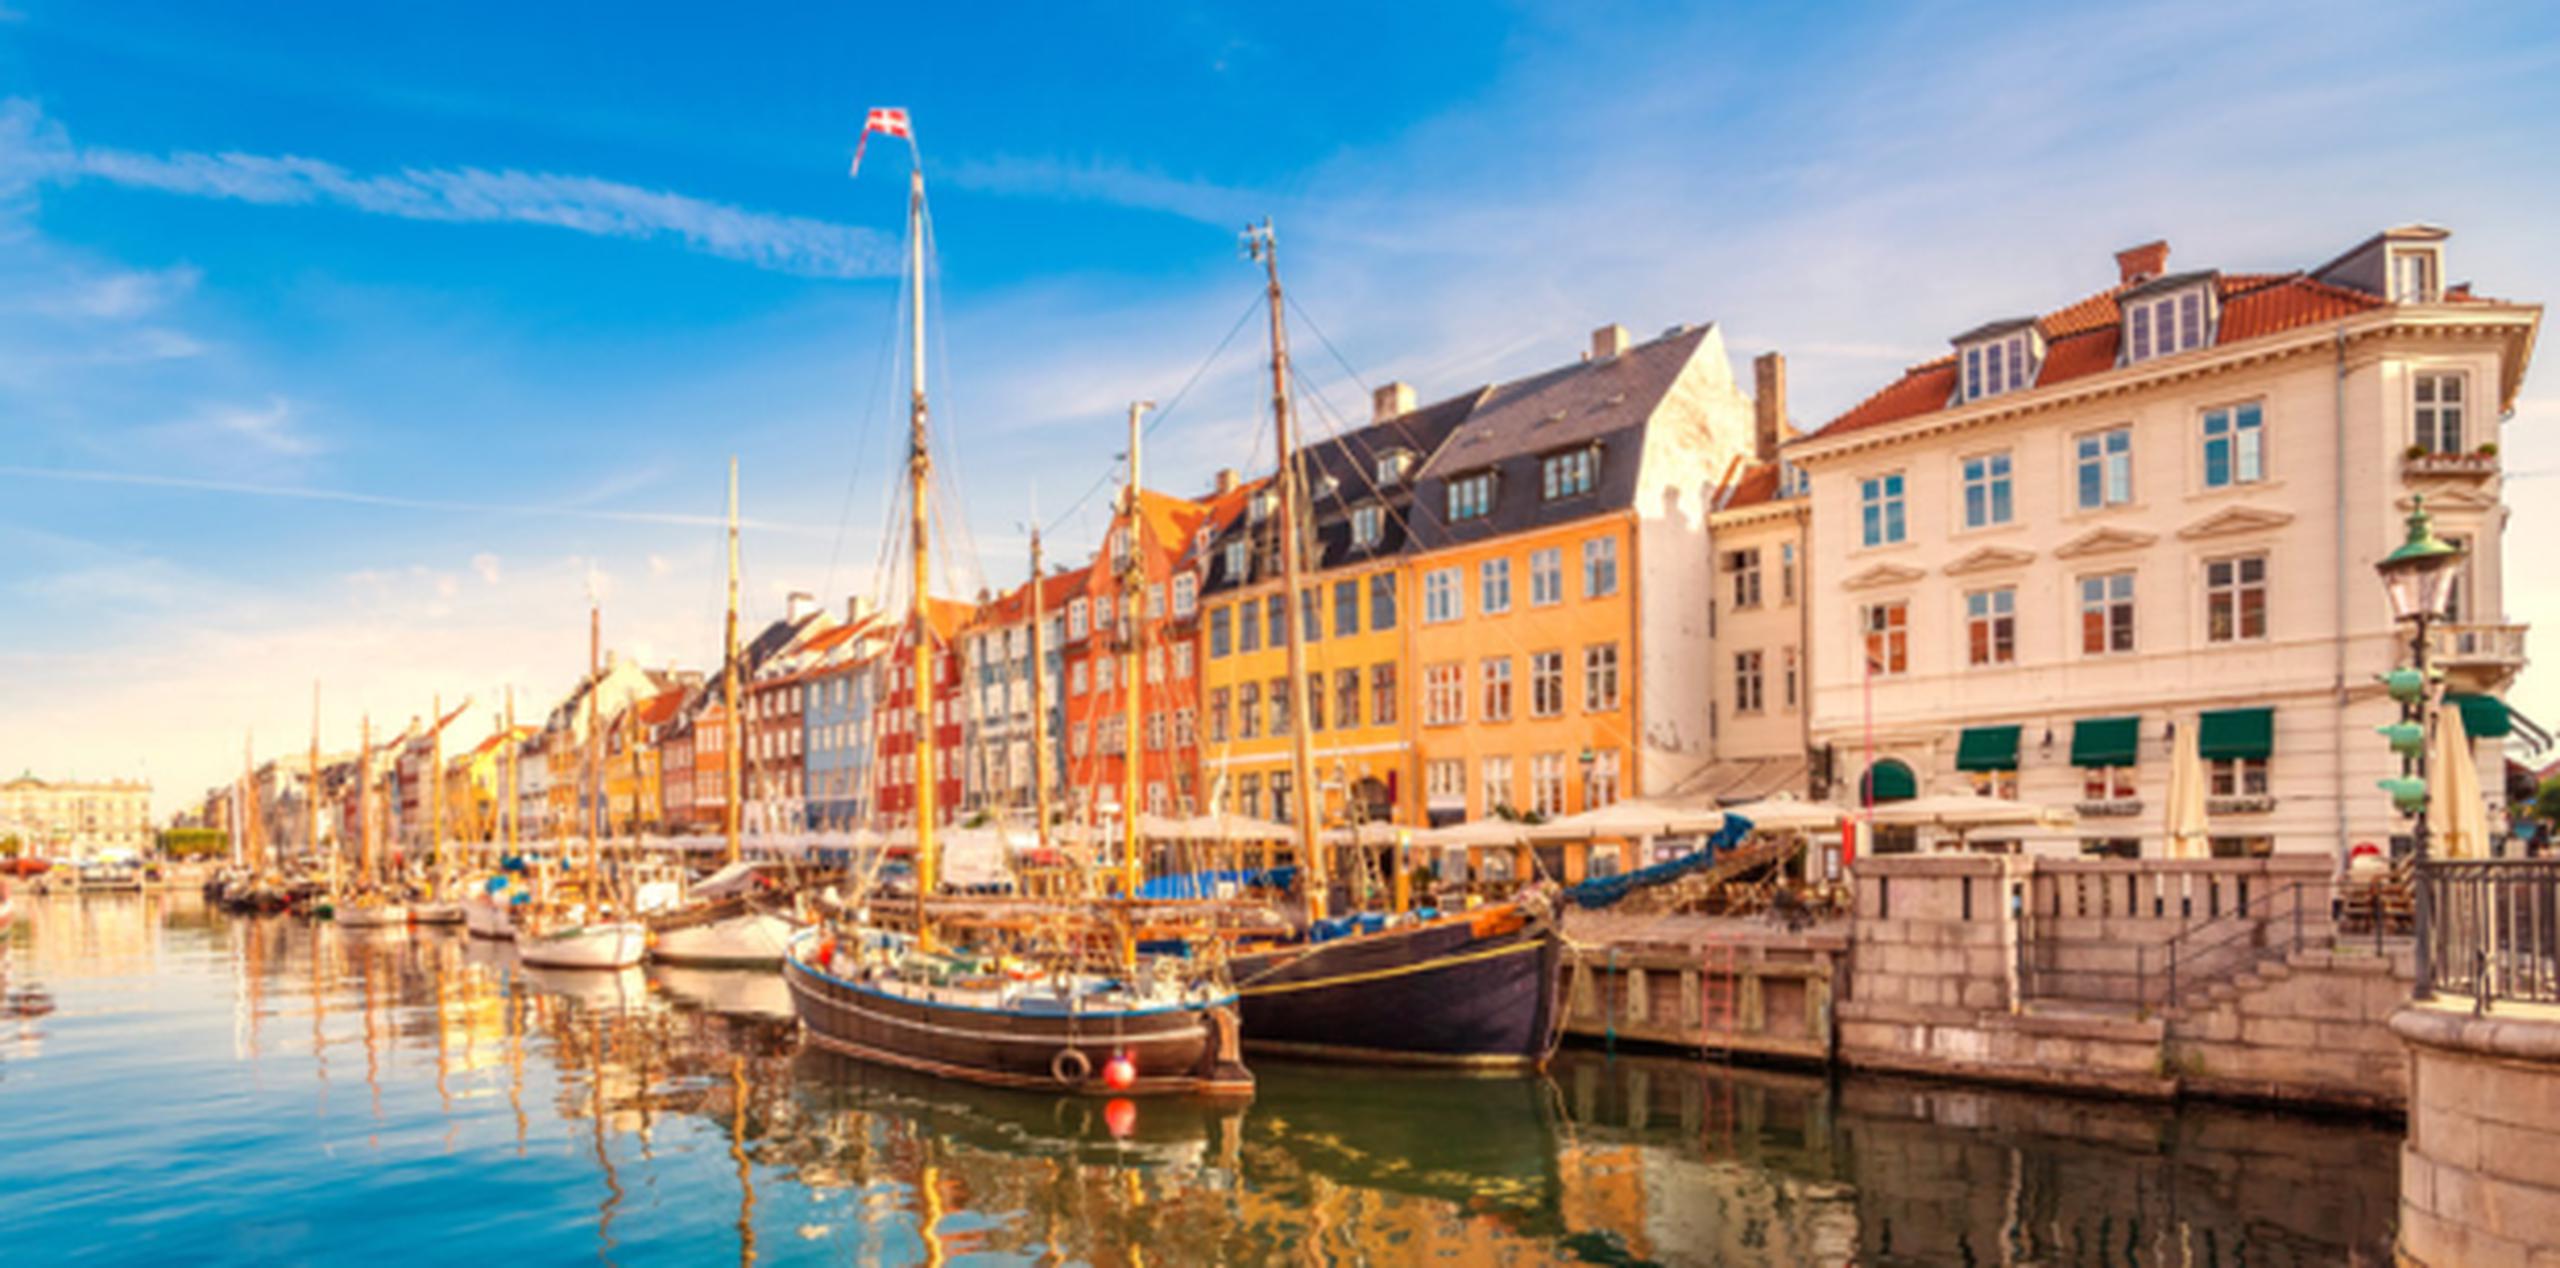 Copenhague, Dinamarca. (Shutterstock)